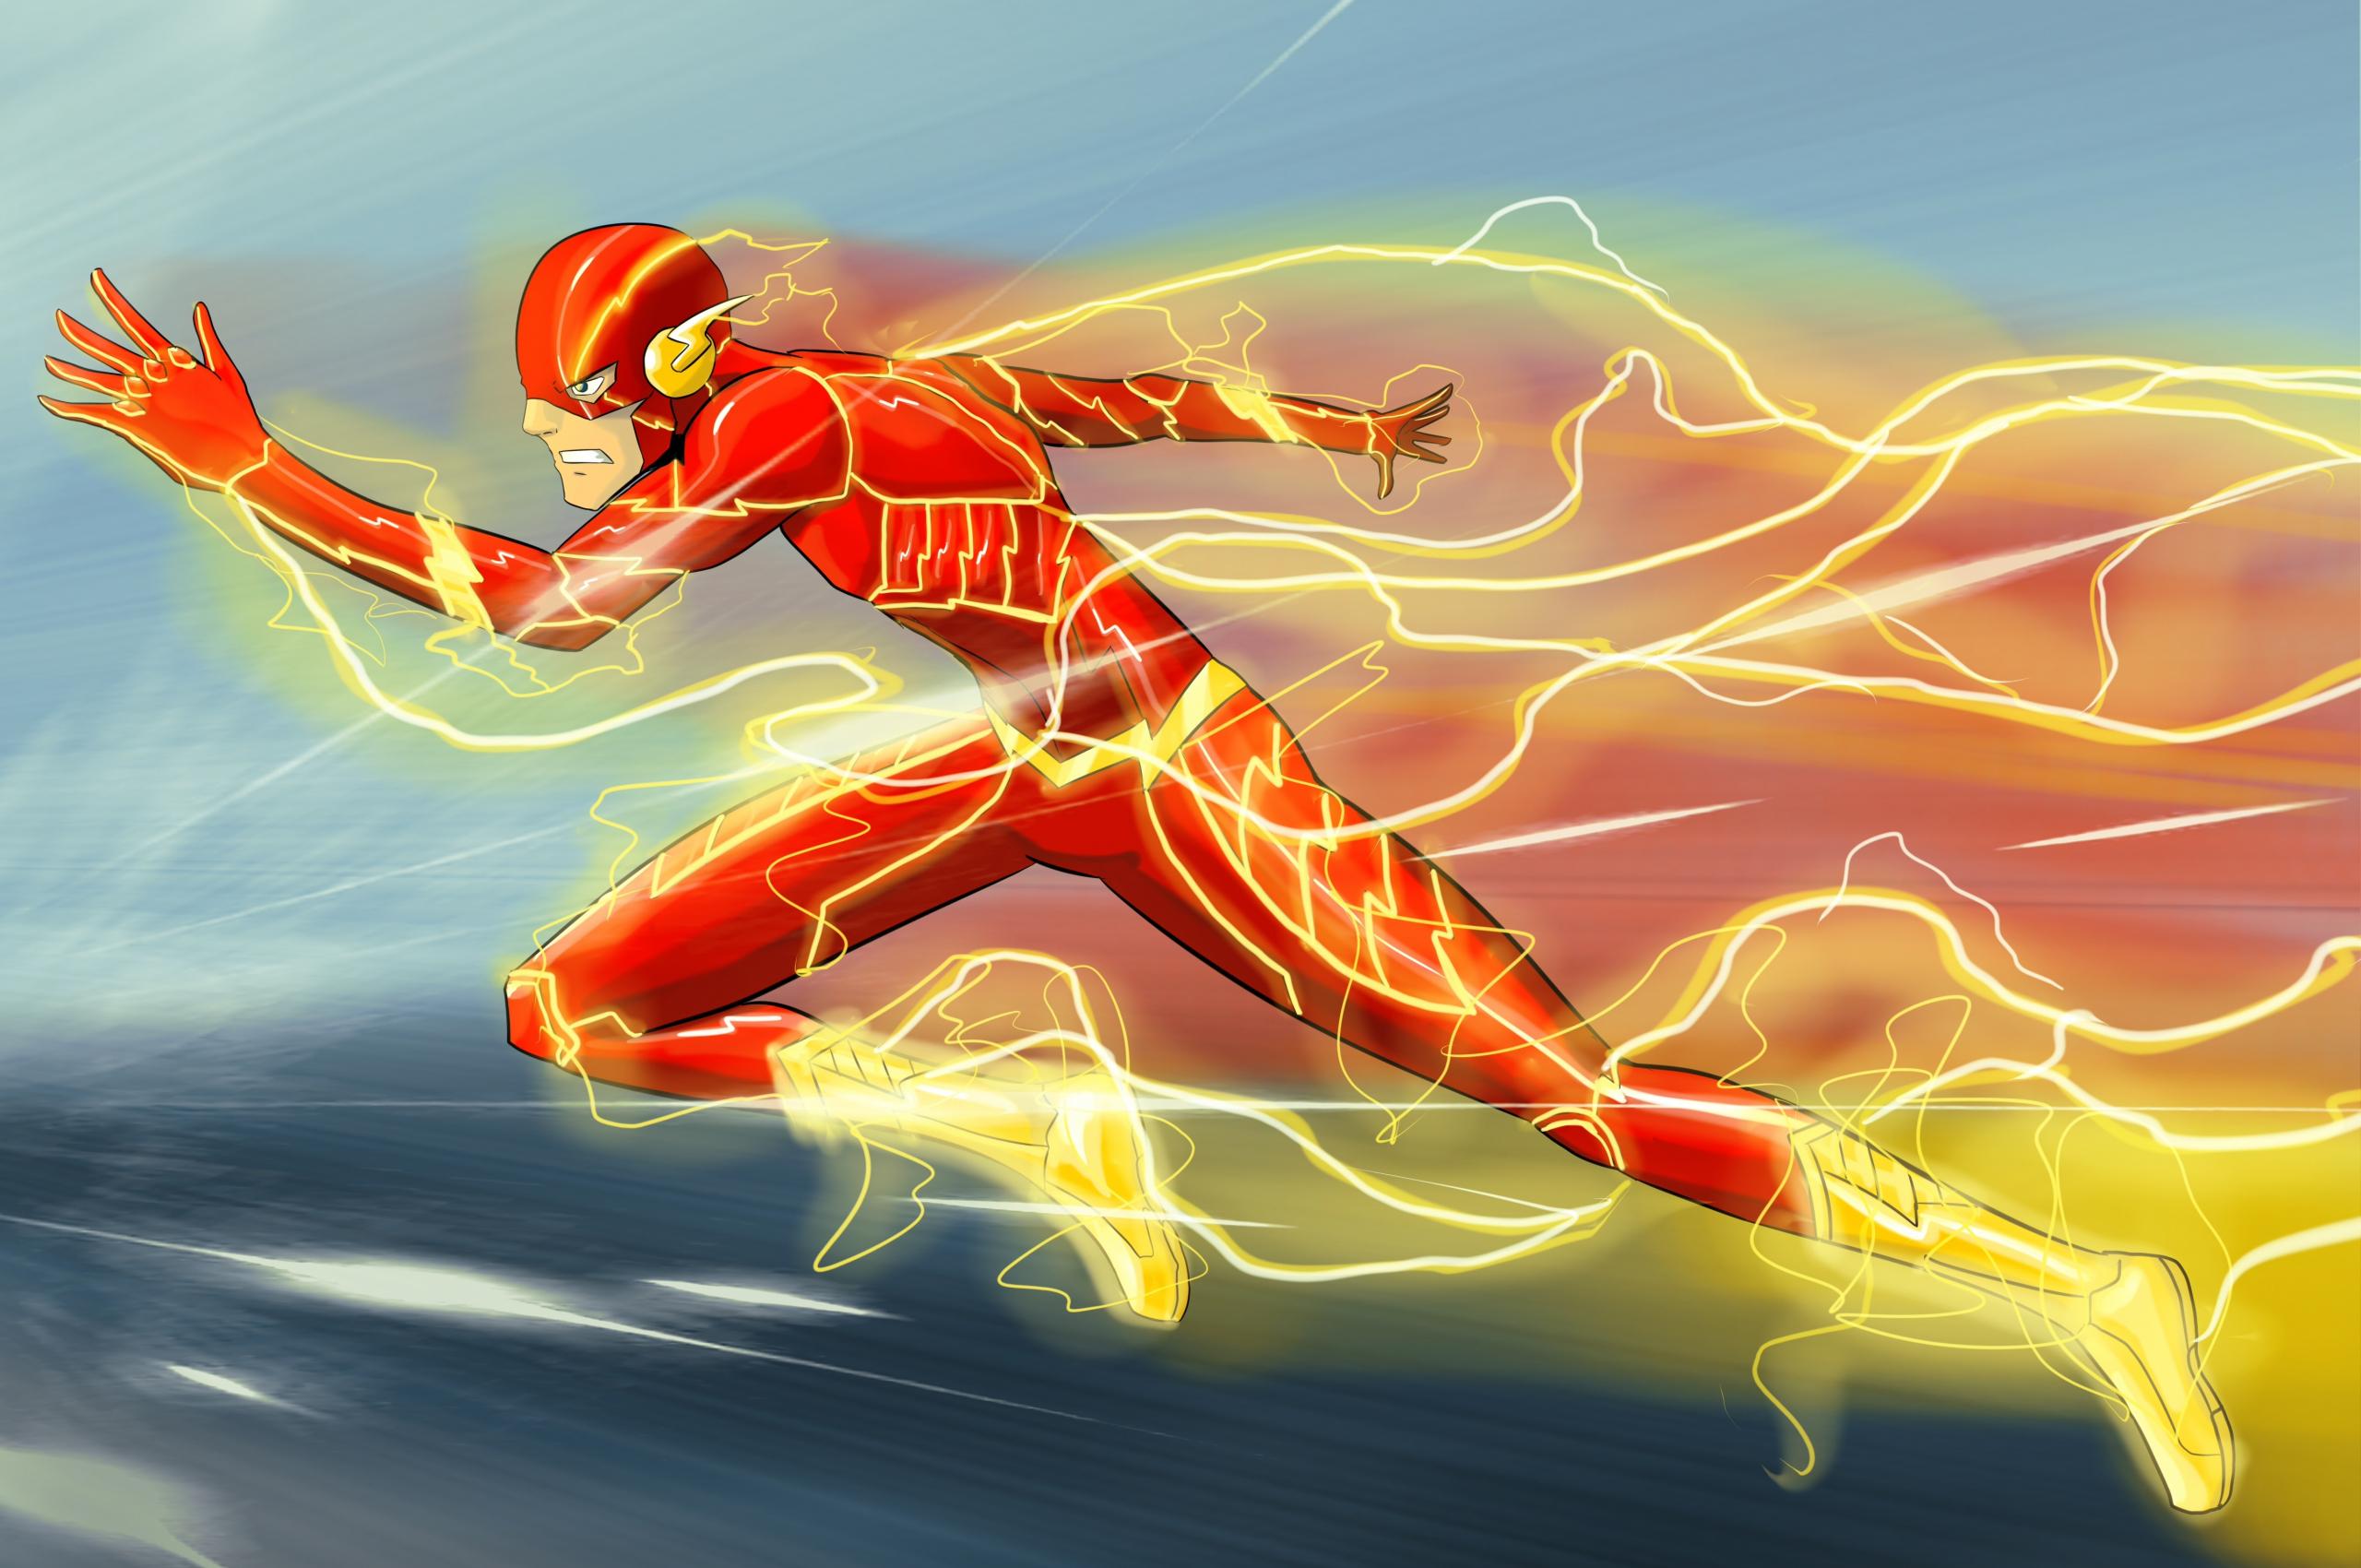 Watch The Flash Online - Stream Full Episodes